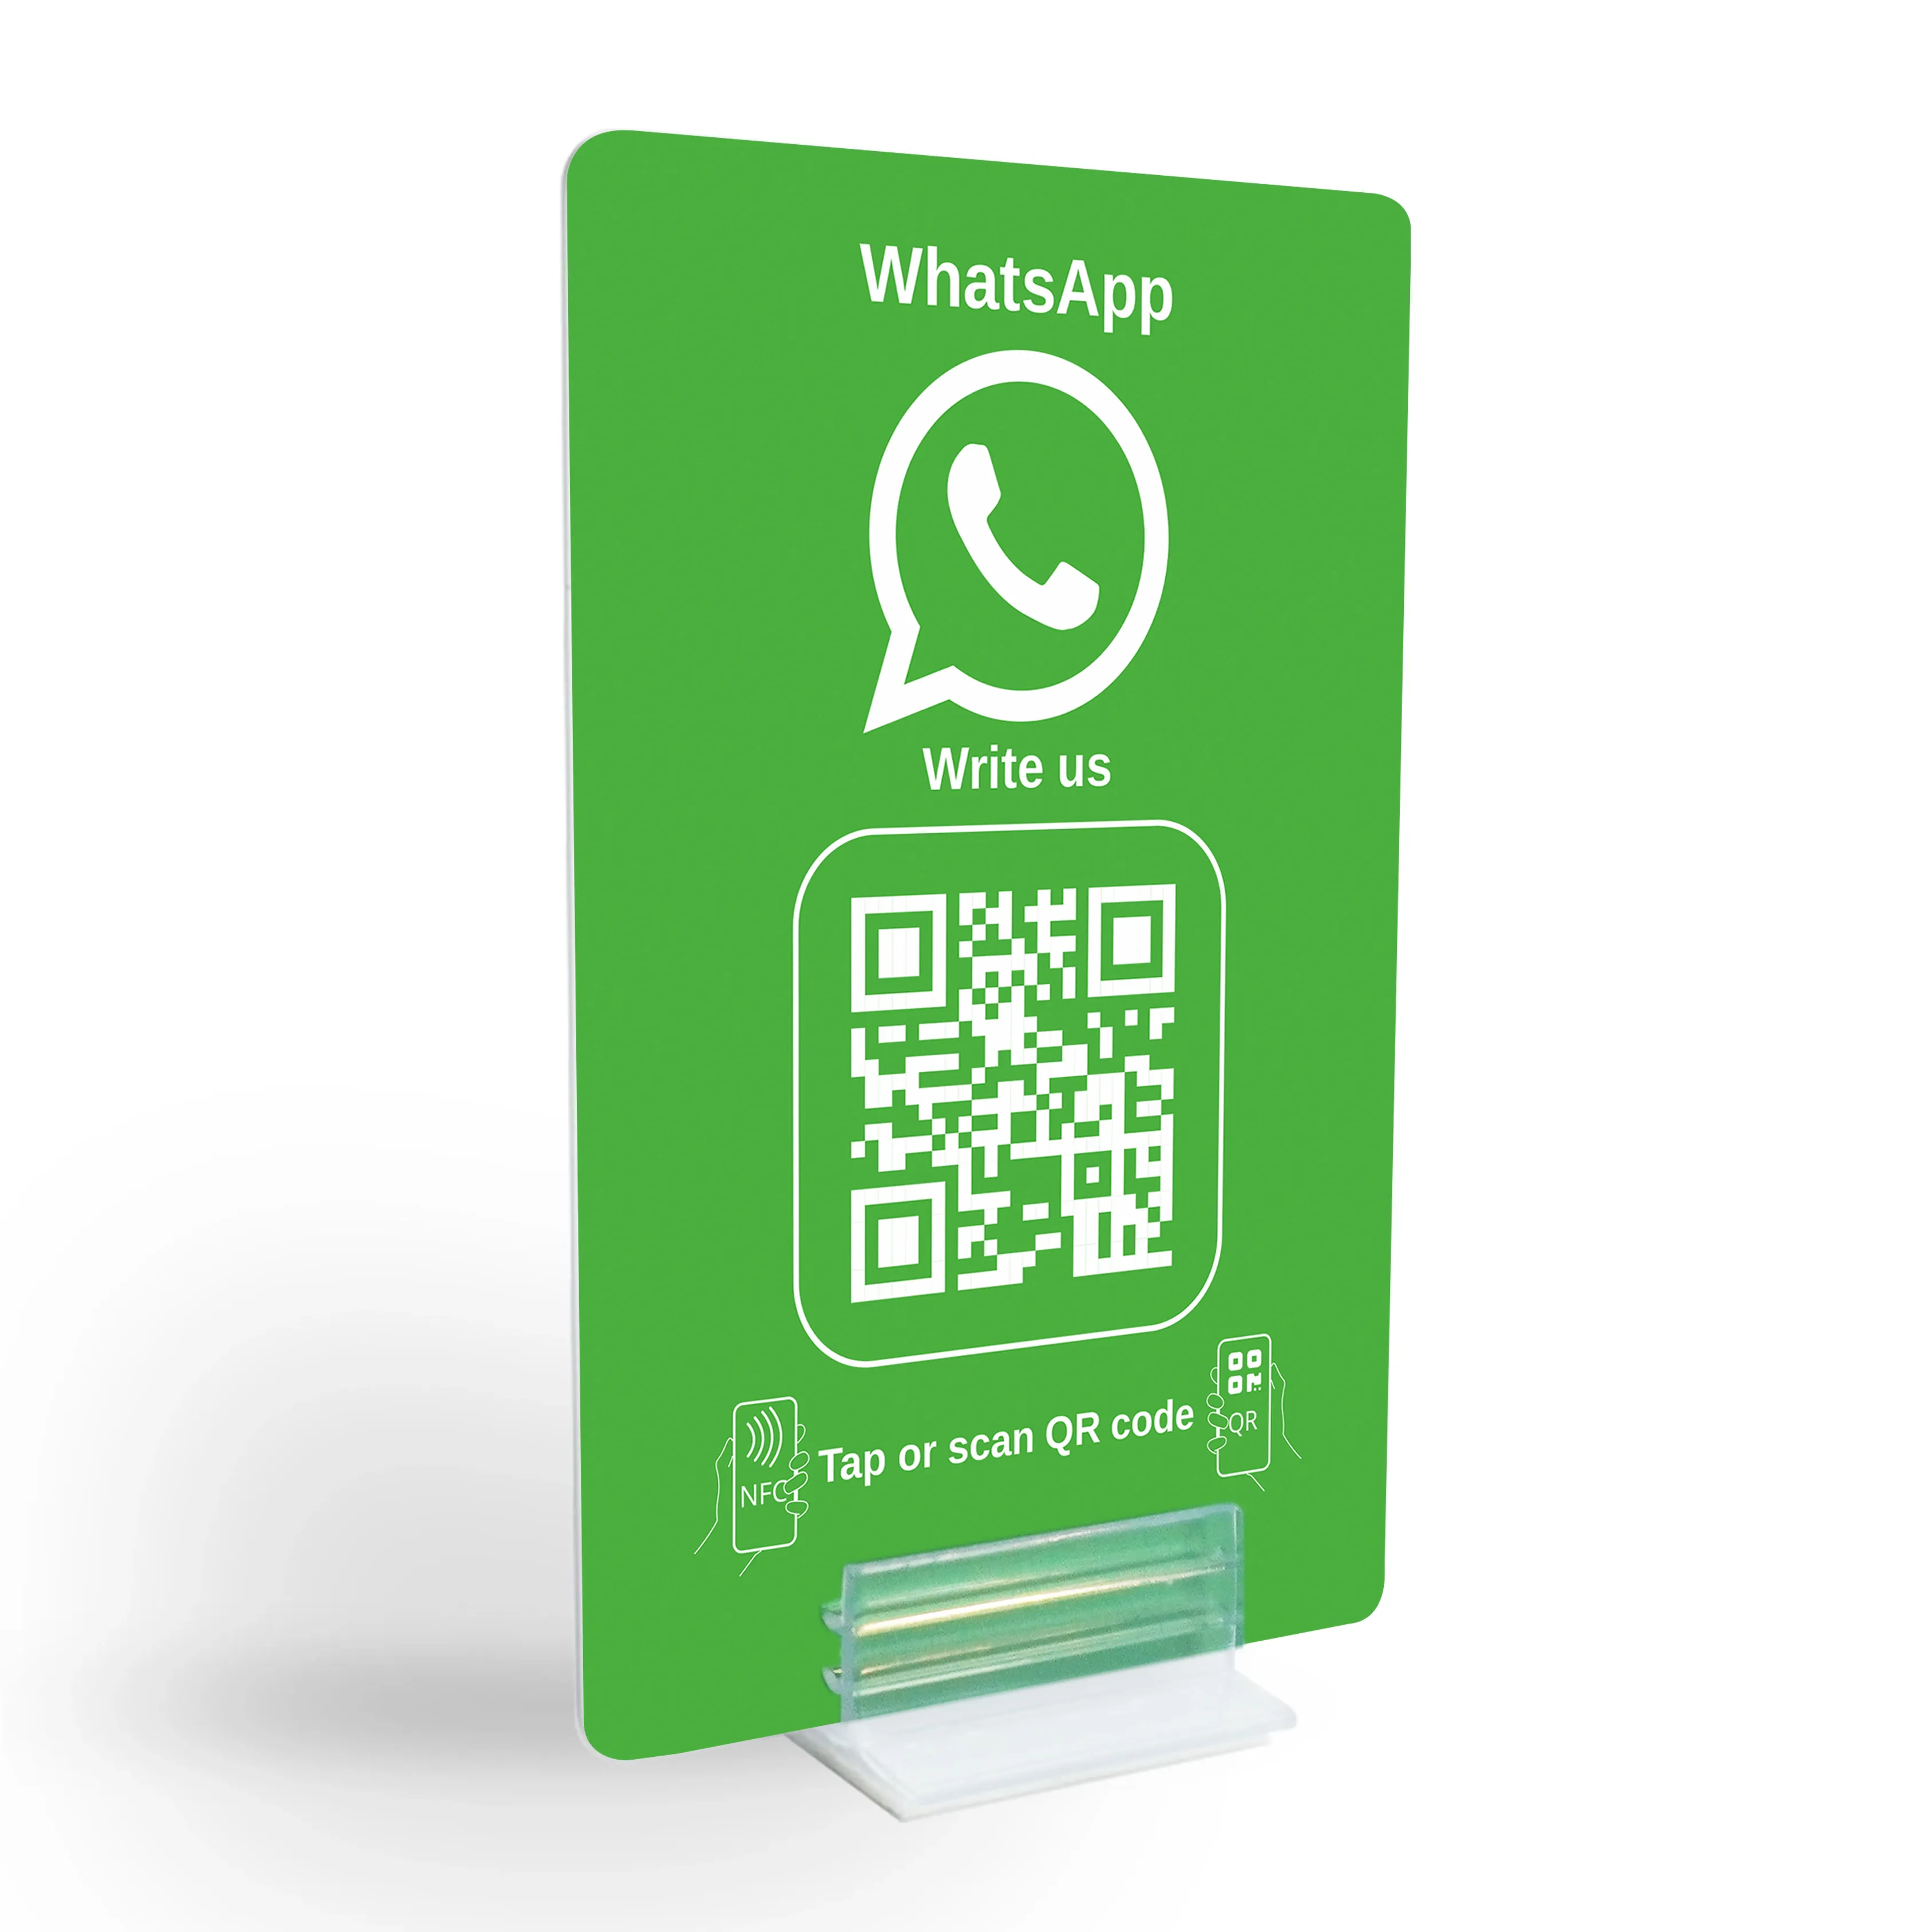 WhatsApp Direct Connect – NFC/QR-Code Aufsteller für sofortigen Kundenkontakt